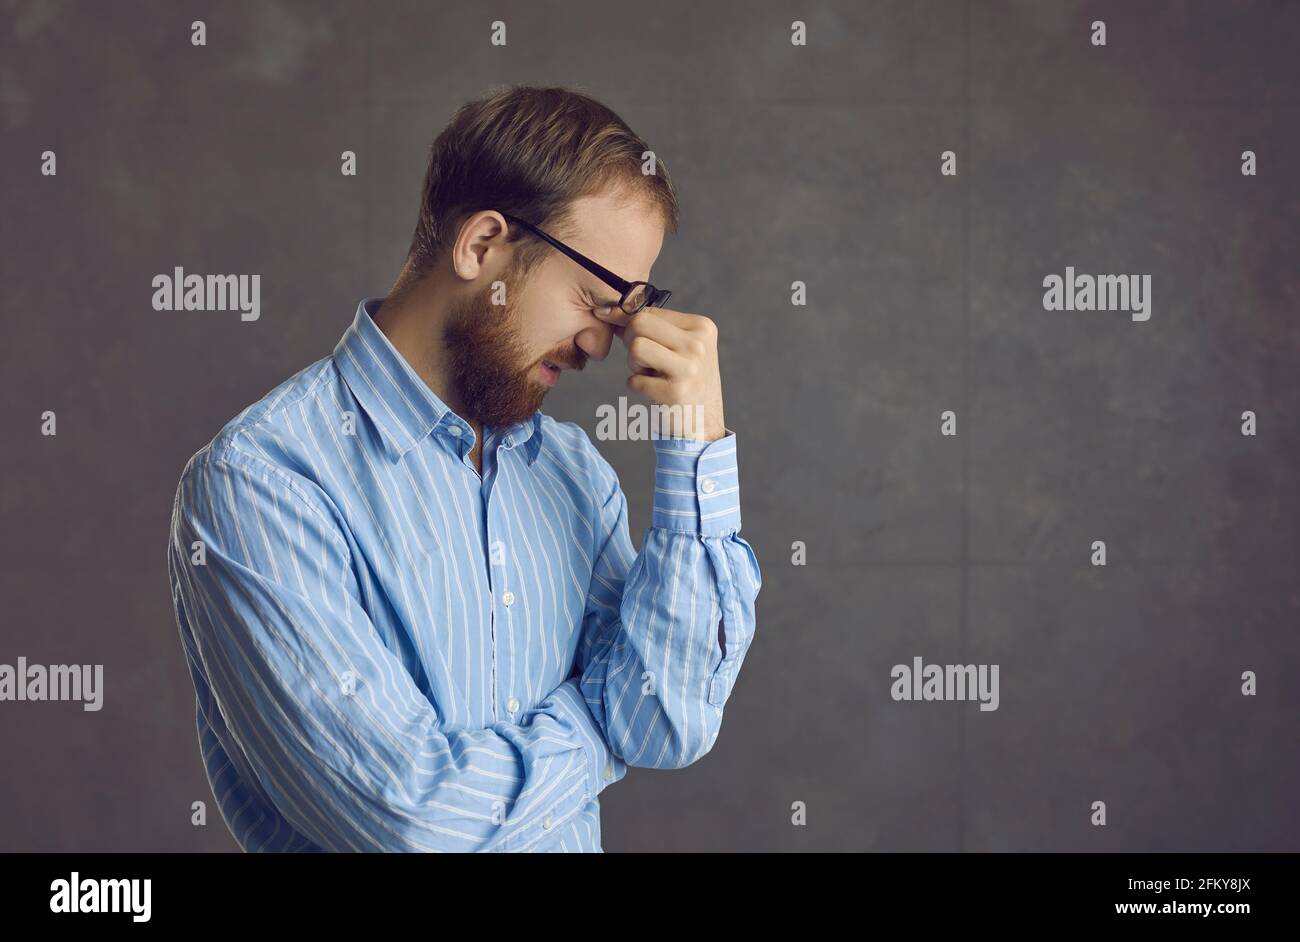 Müde junger Mann, der an Computer-Augenbelastung leidet, die ihn reibt Nach einem langen Arbeitstag Schmerzen in den Augen Stockfoto